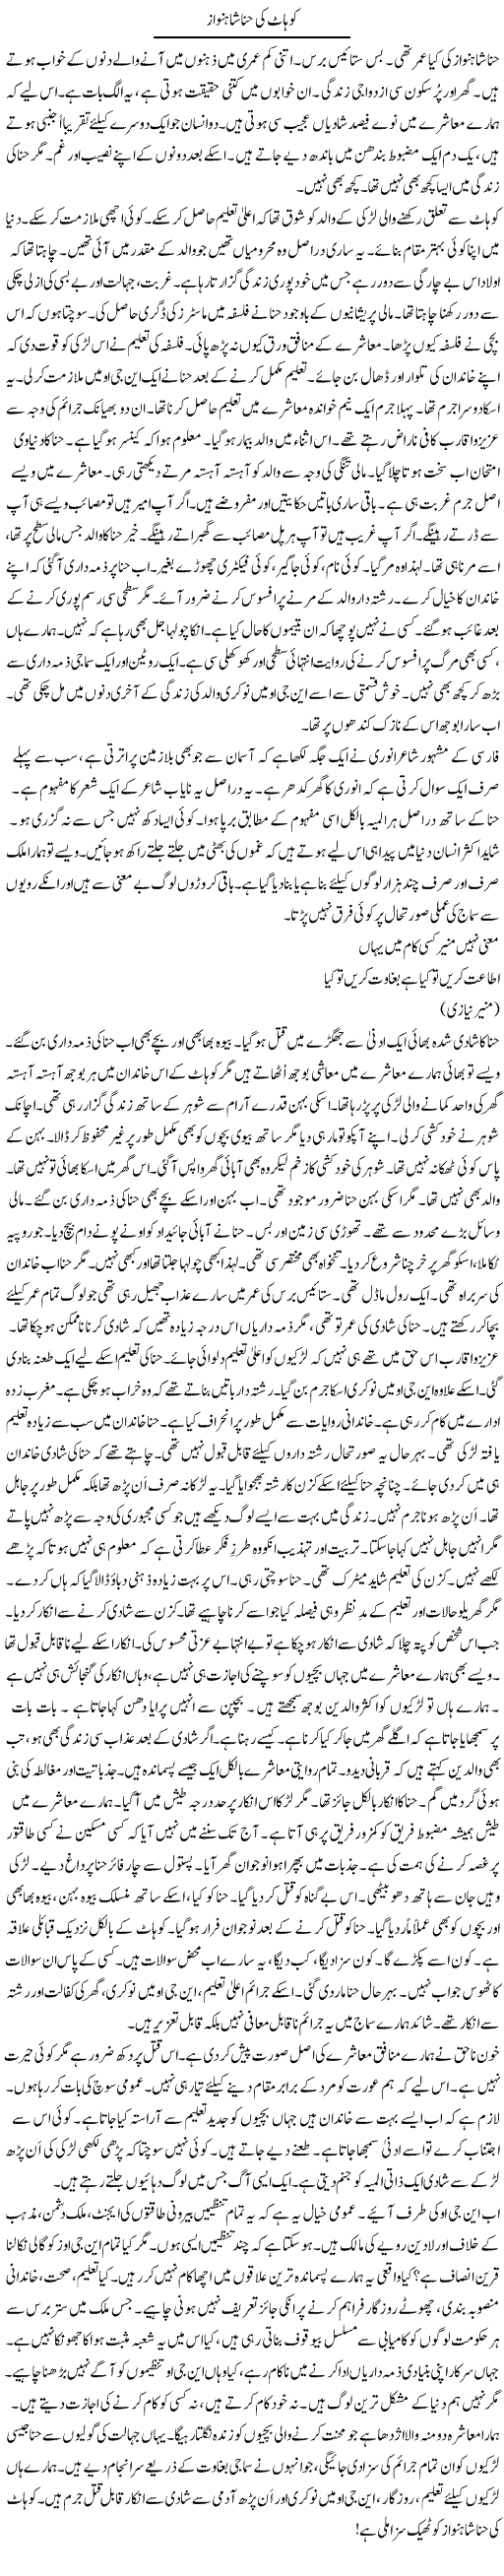 Kohat Ki Hina Shahnawaz | Rao Manzar Hayat | Daily Urdu Columns